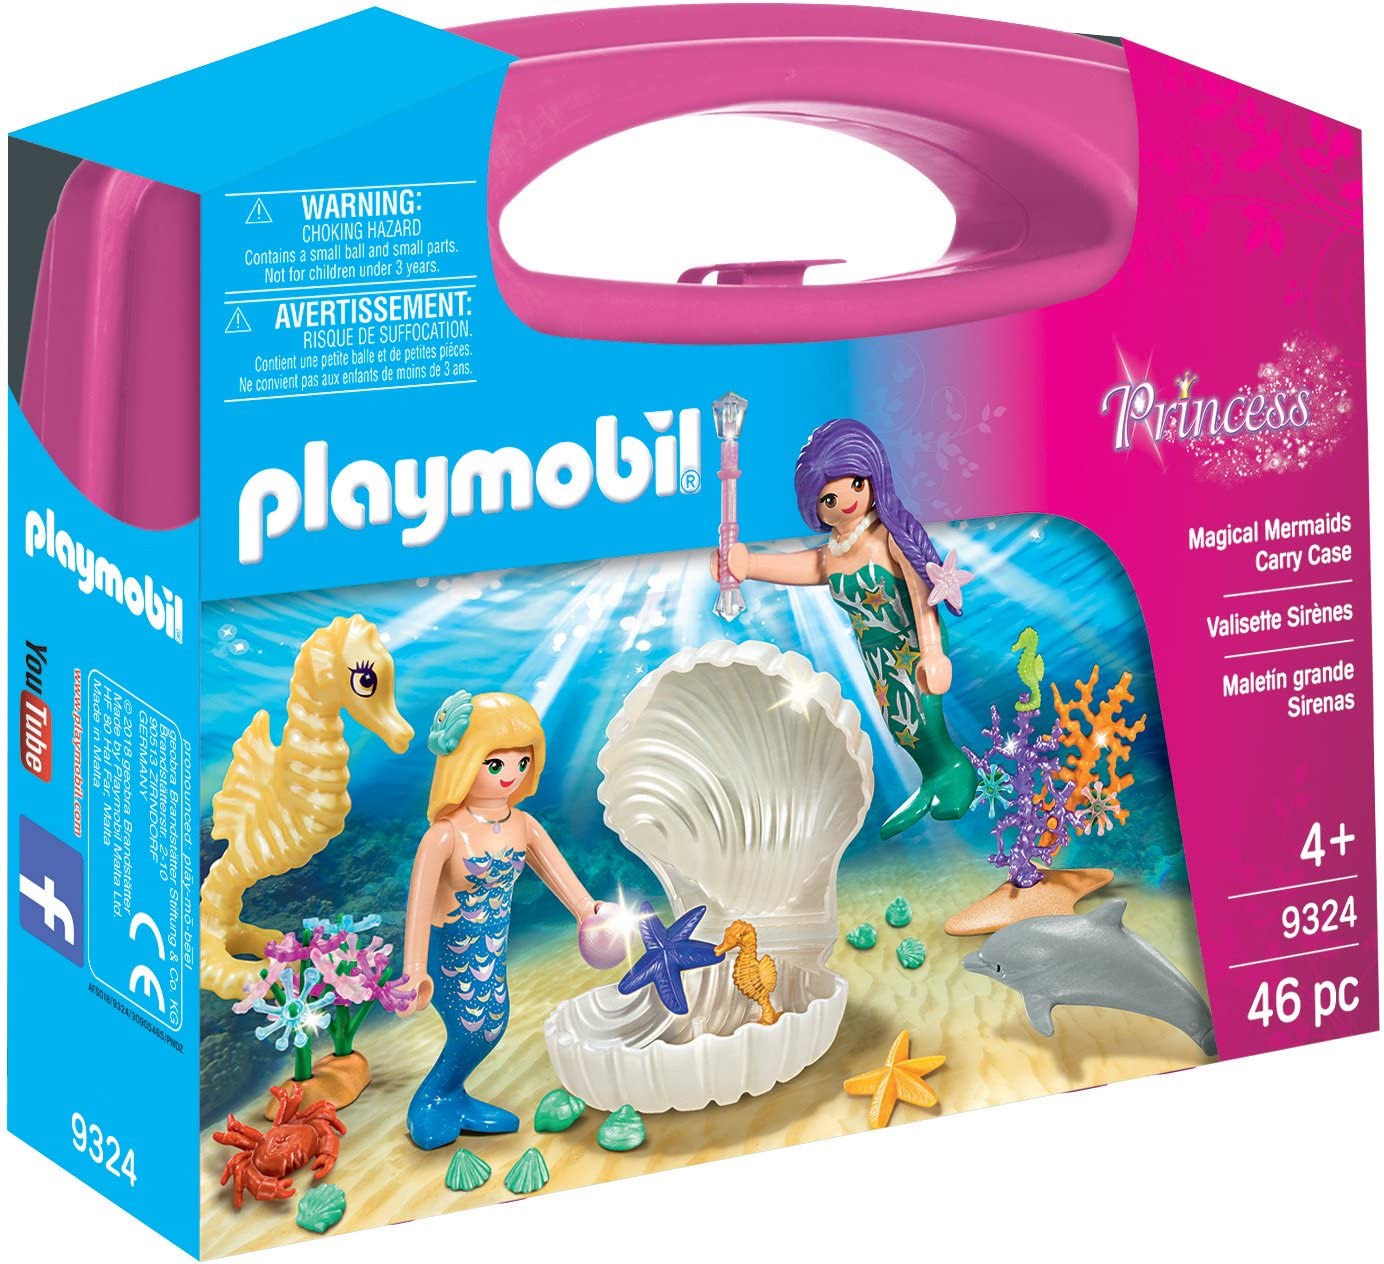 Playmobil - 9324 - Princess - Mermaid Carry Case